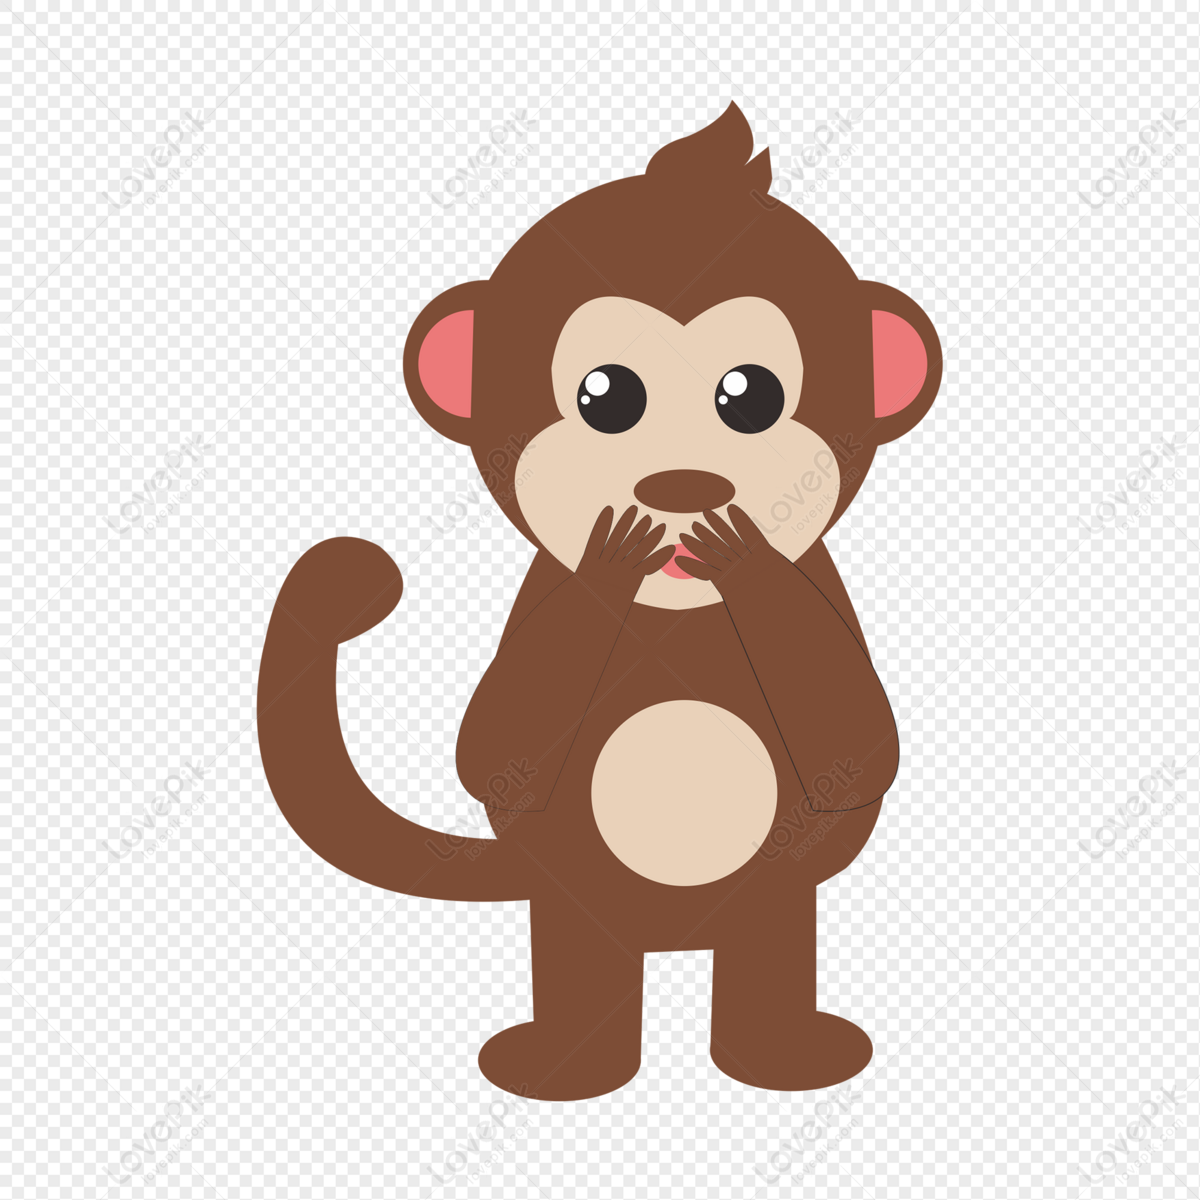 Khỉ nhỏ sáng tạo: Đừng bỏ lỡ cơ hội thưởng thức những chiếc mặt nạ đầy tinh tế và ấn tượng của loài khỉ nhỏ! Sự sáng tạo và khả năng biểu đạt của chúng sẽ khiến bạn ngỡ ngàng và thích thú!